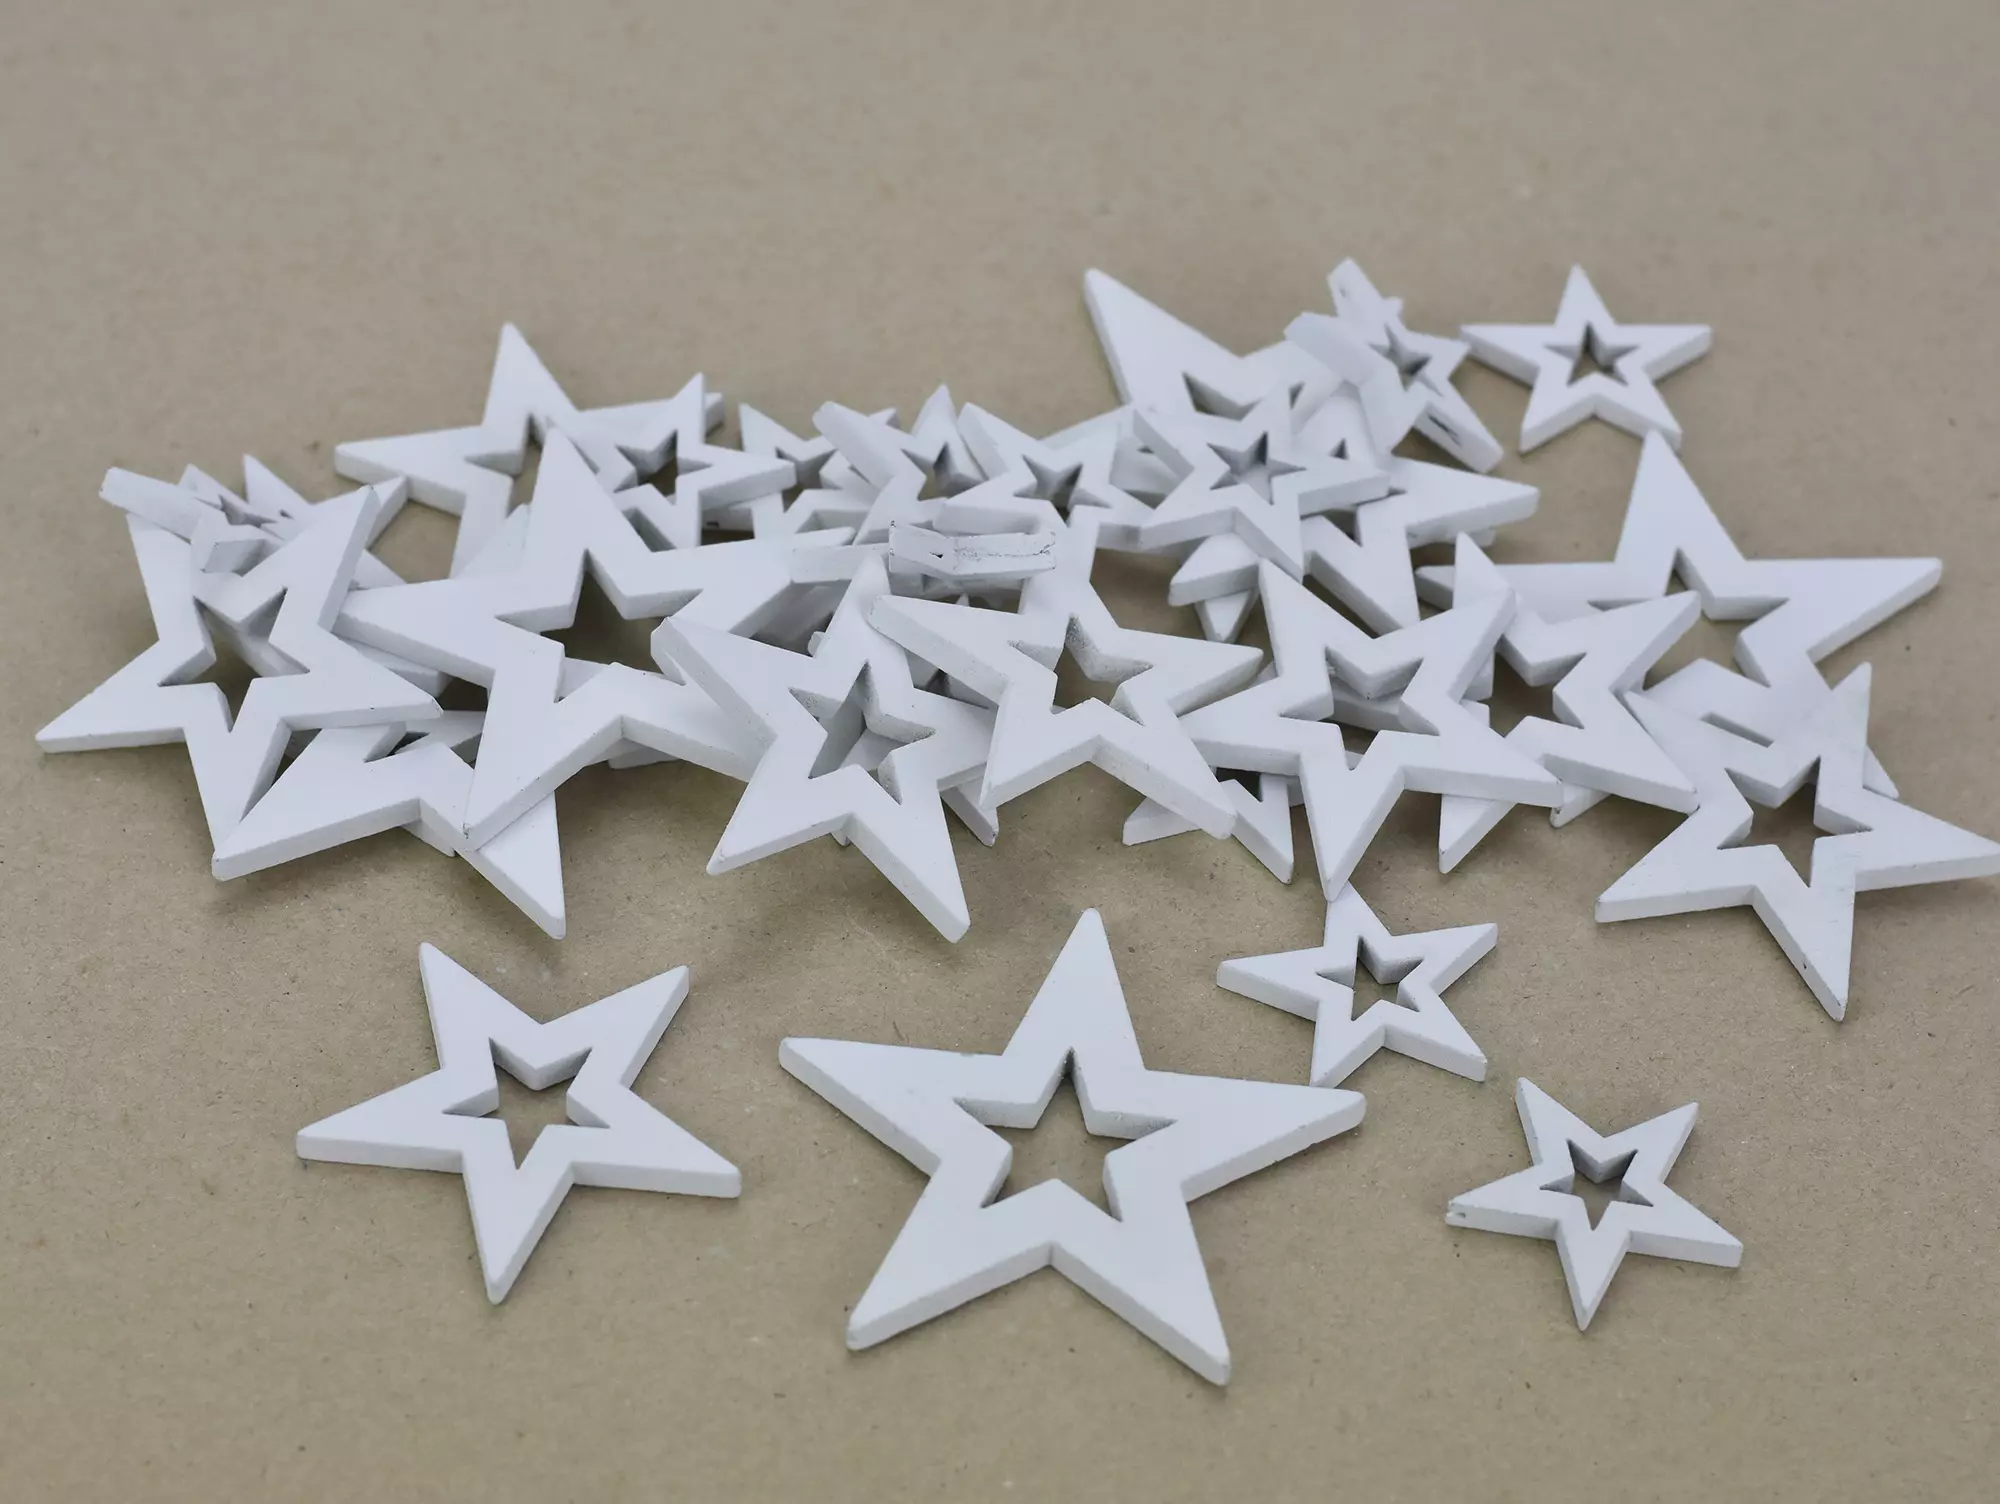 Fa - Lyukas csillag fehér vegyes méret 30db/csomag